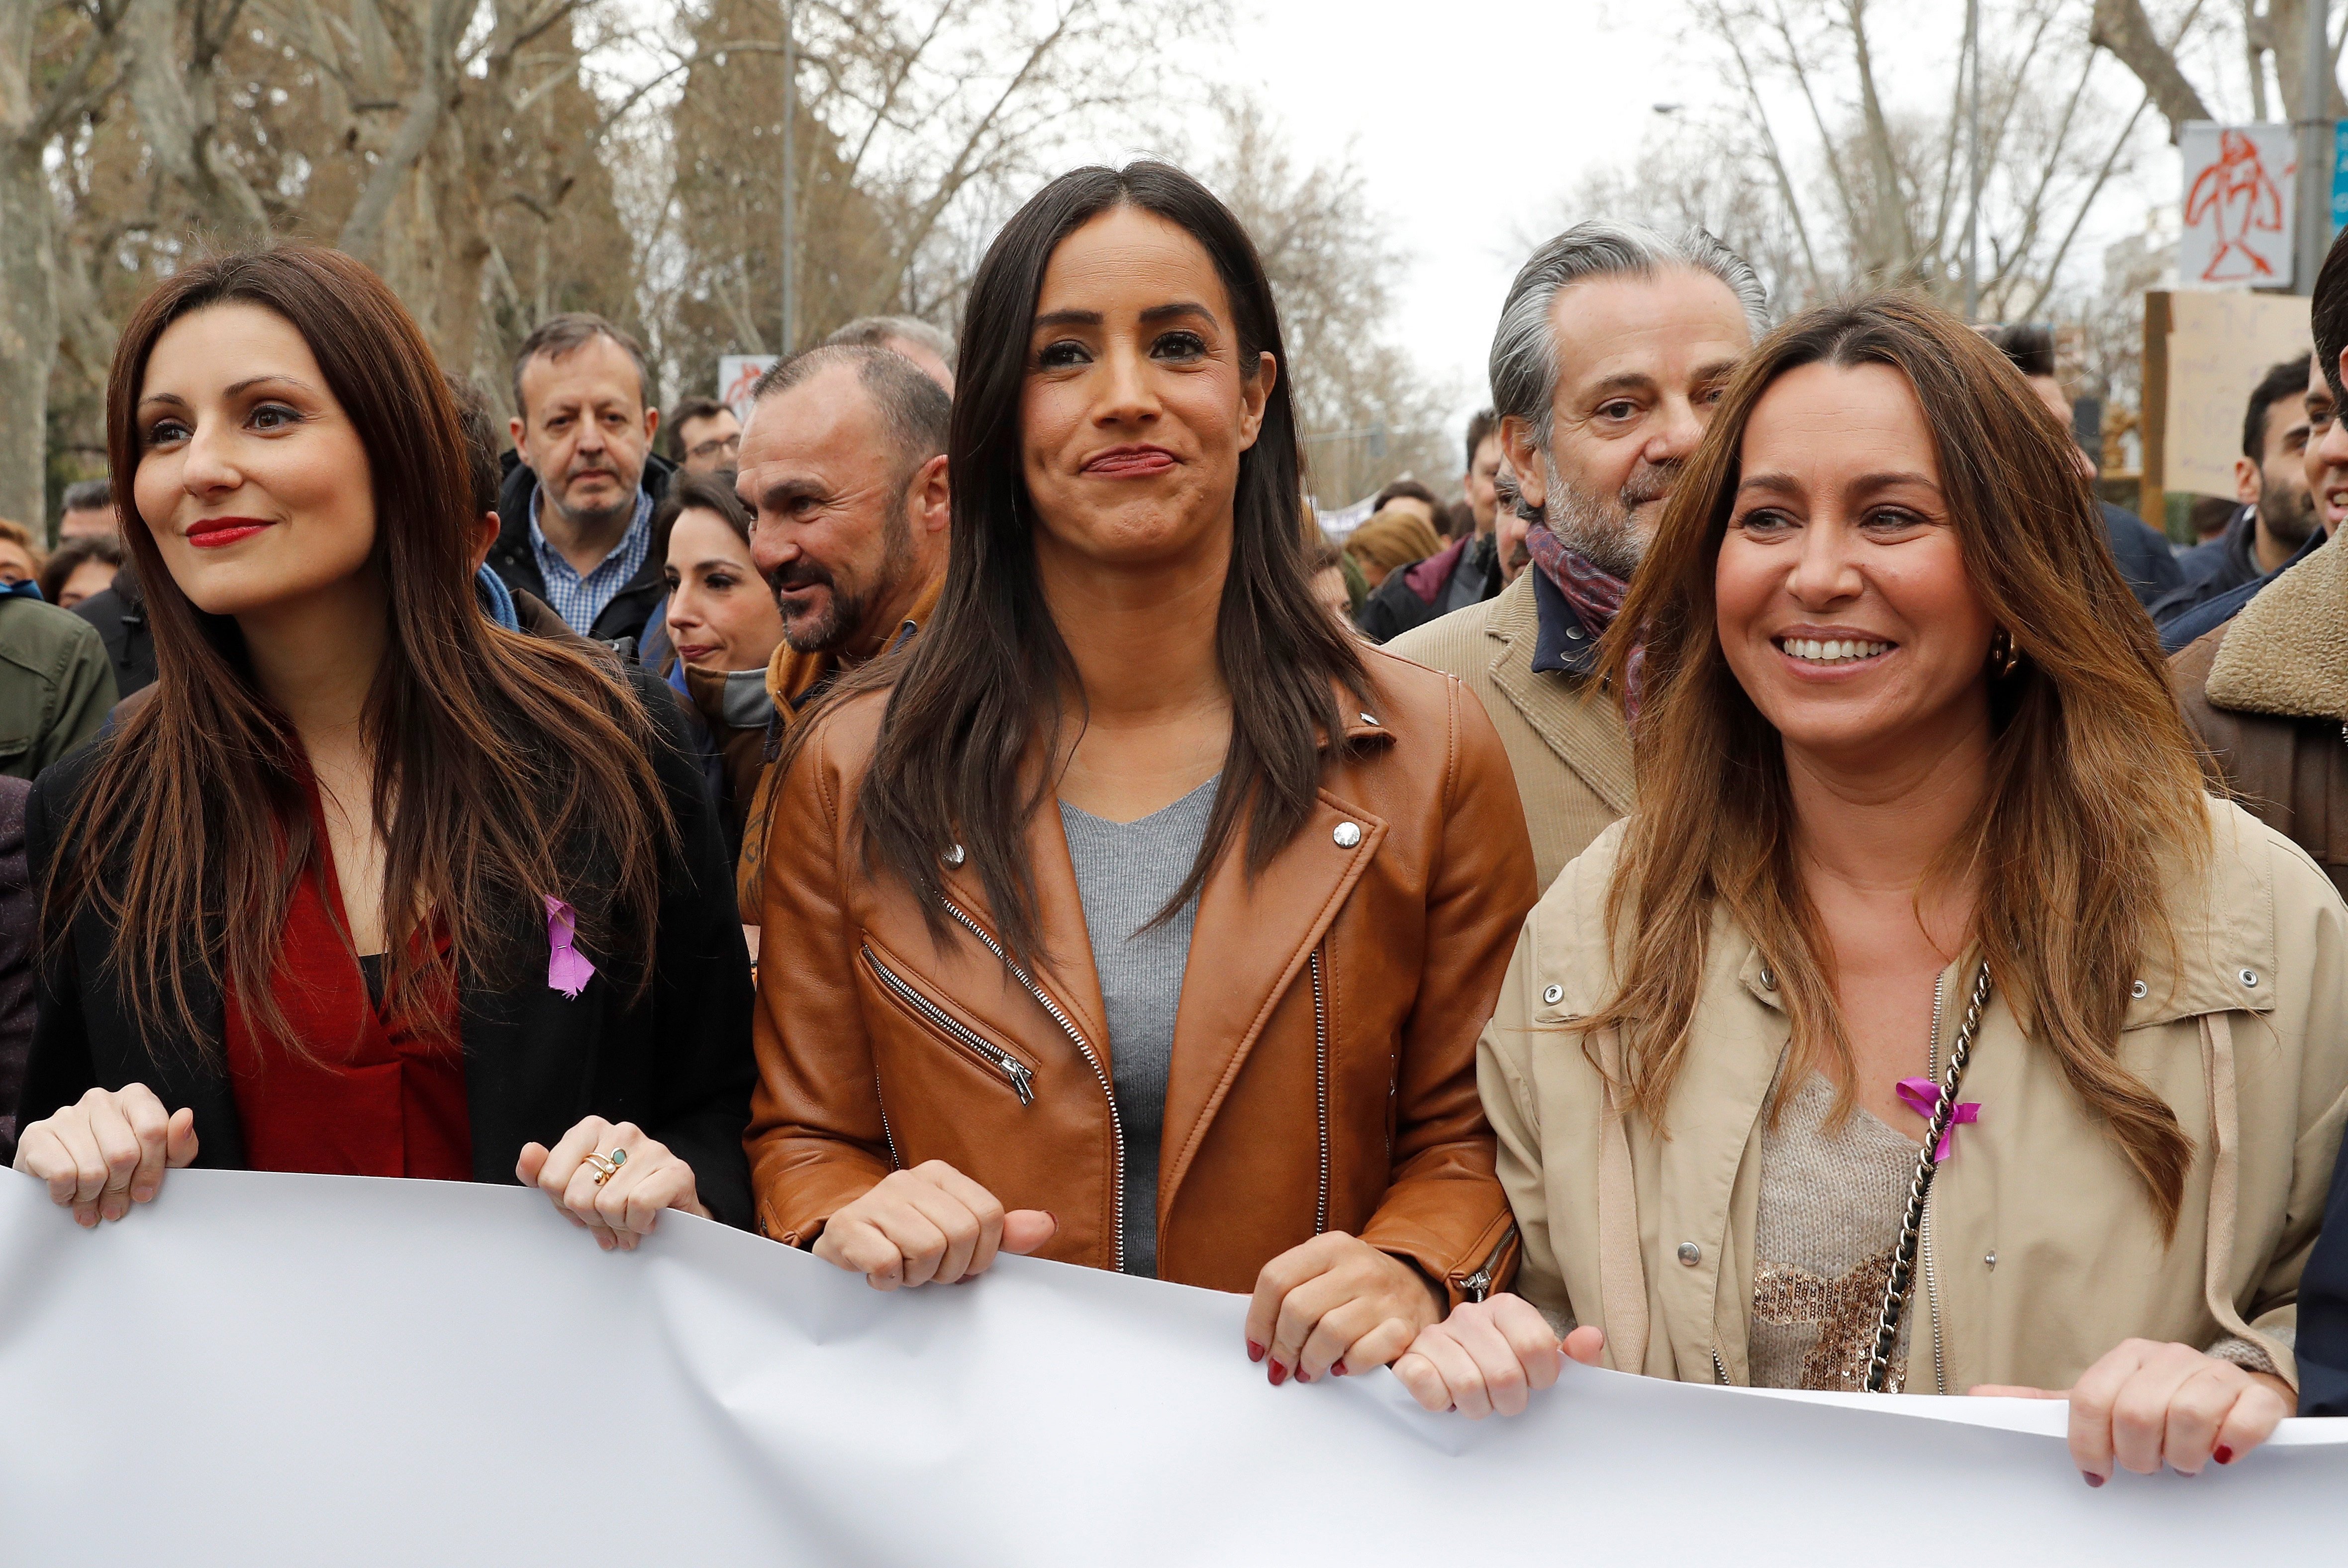 VÍDEO| Roldán se marcha a Madrid y las feministas la abuchean: "Fuera fascistas"